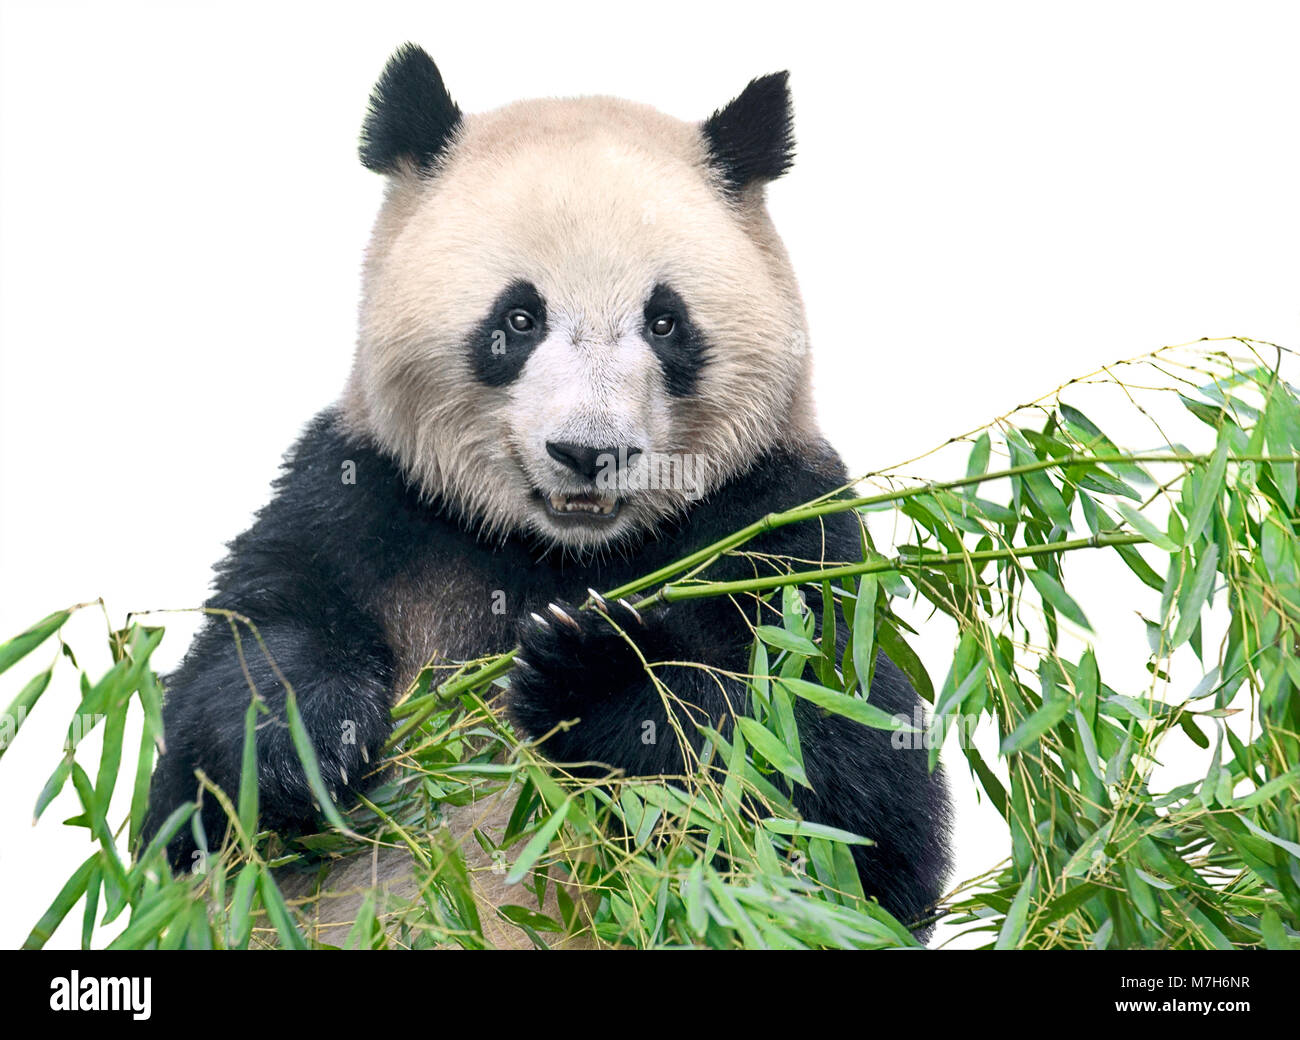 Isolierte Panda. Große Panda Bär Holding ein Bündel Bambus Zweige mit Blättern auf weißem Hintergrund Stockfoto